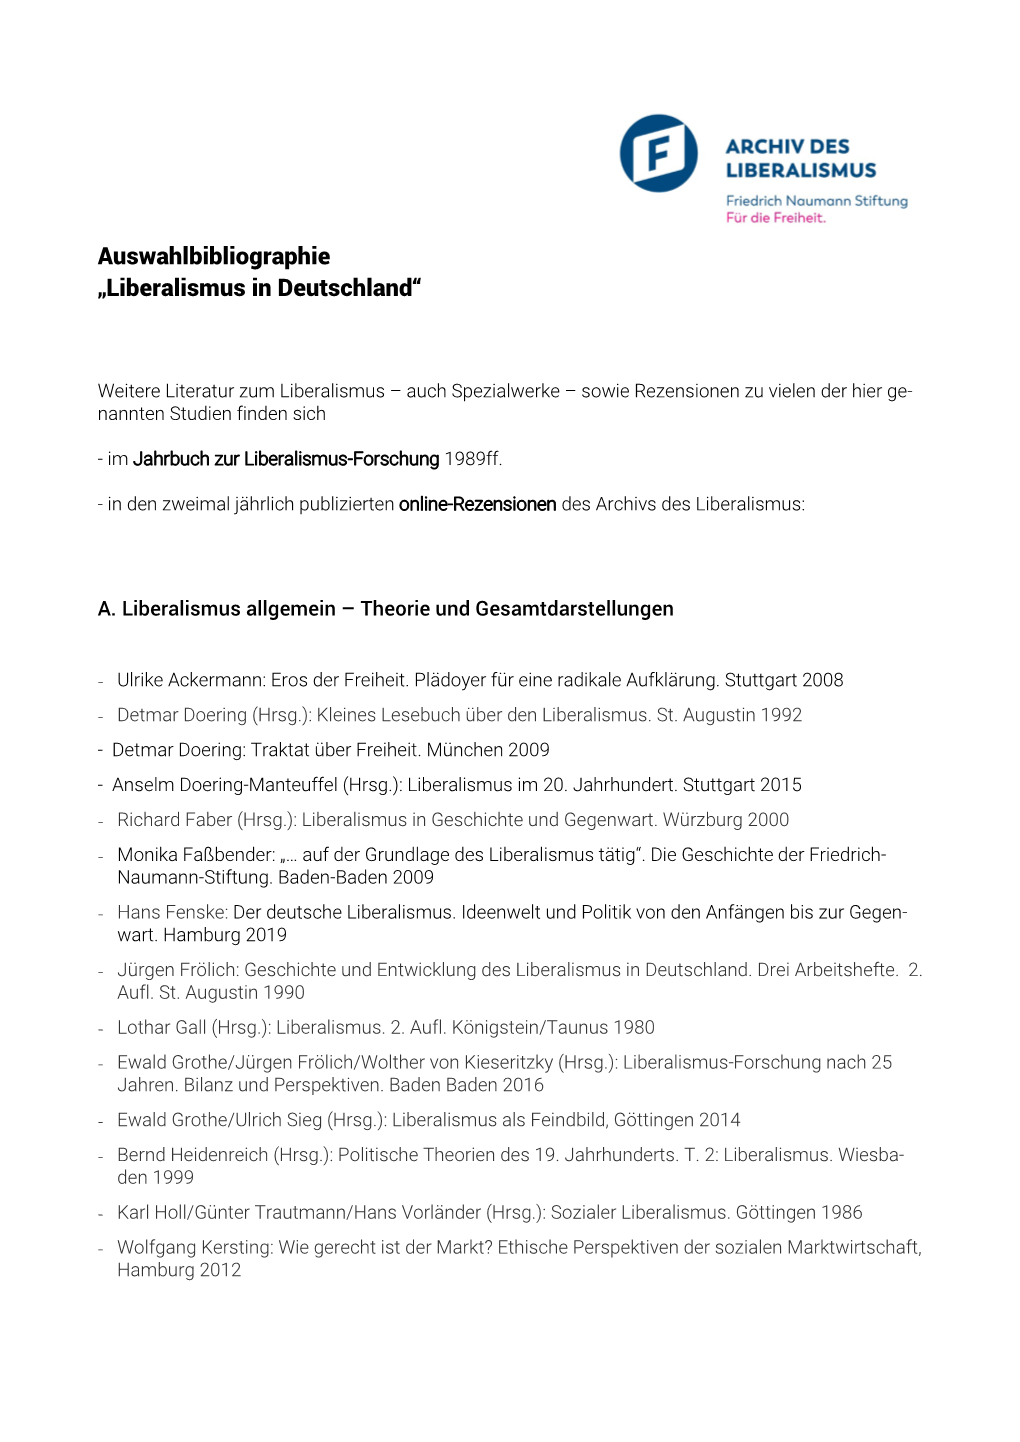 Auswahlbibliographie „Liberalismus in Deutschland“